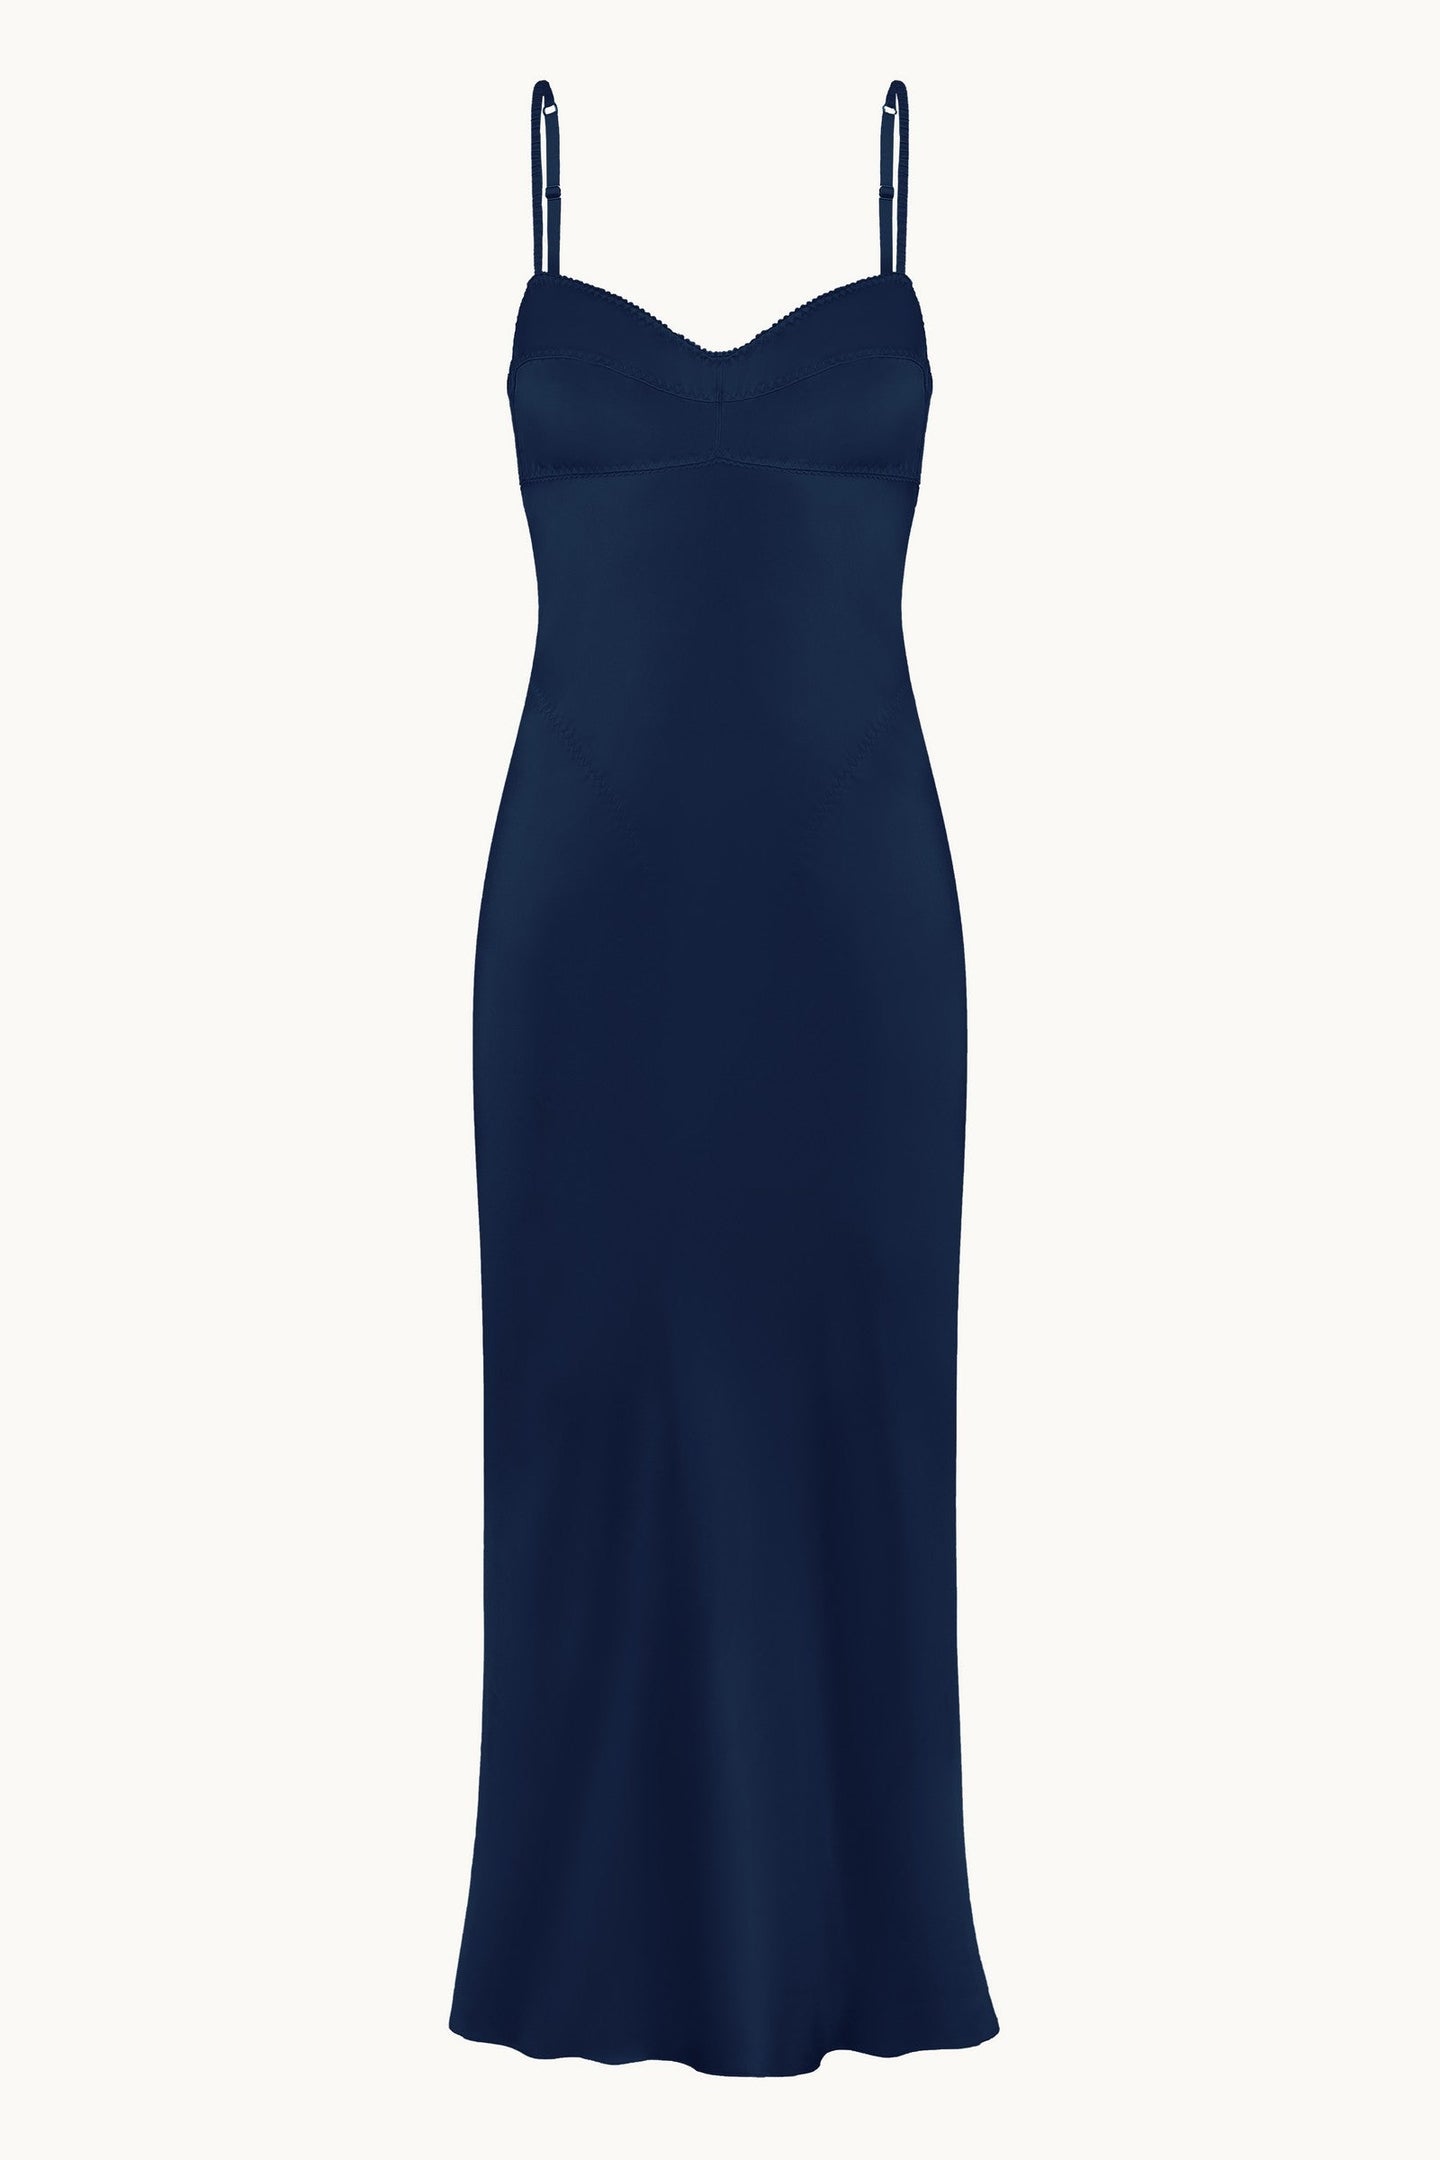 Waterlily dark blue dress front view